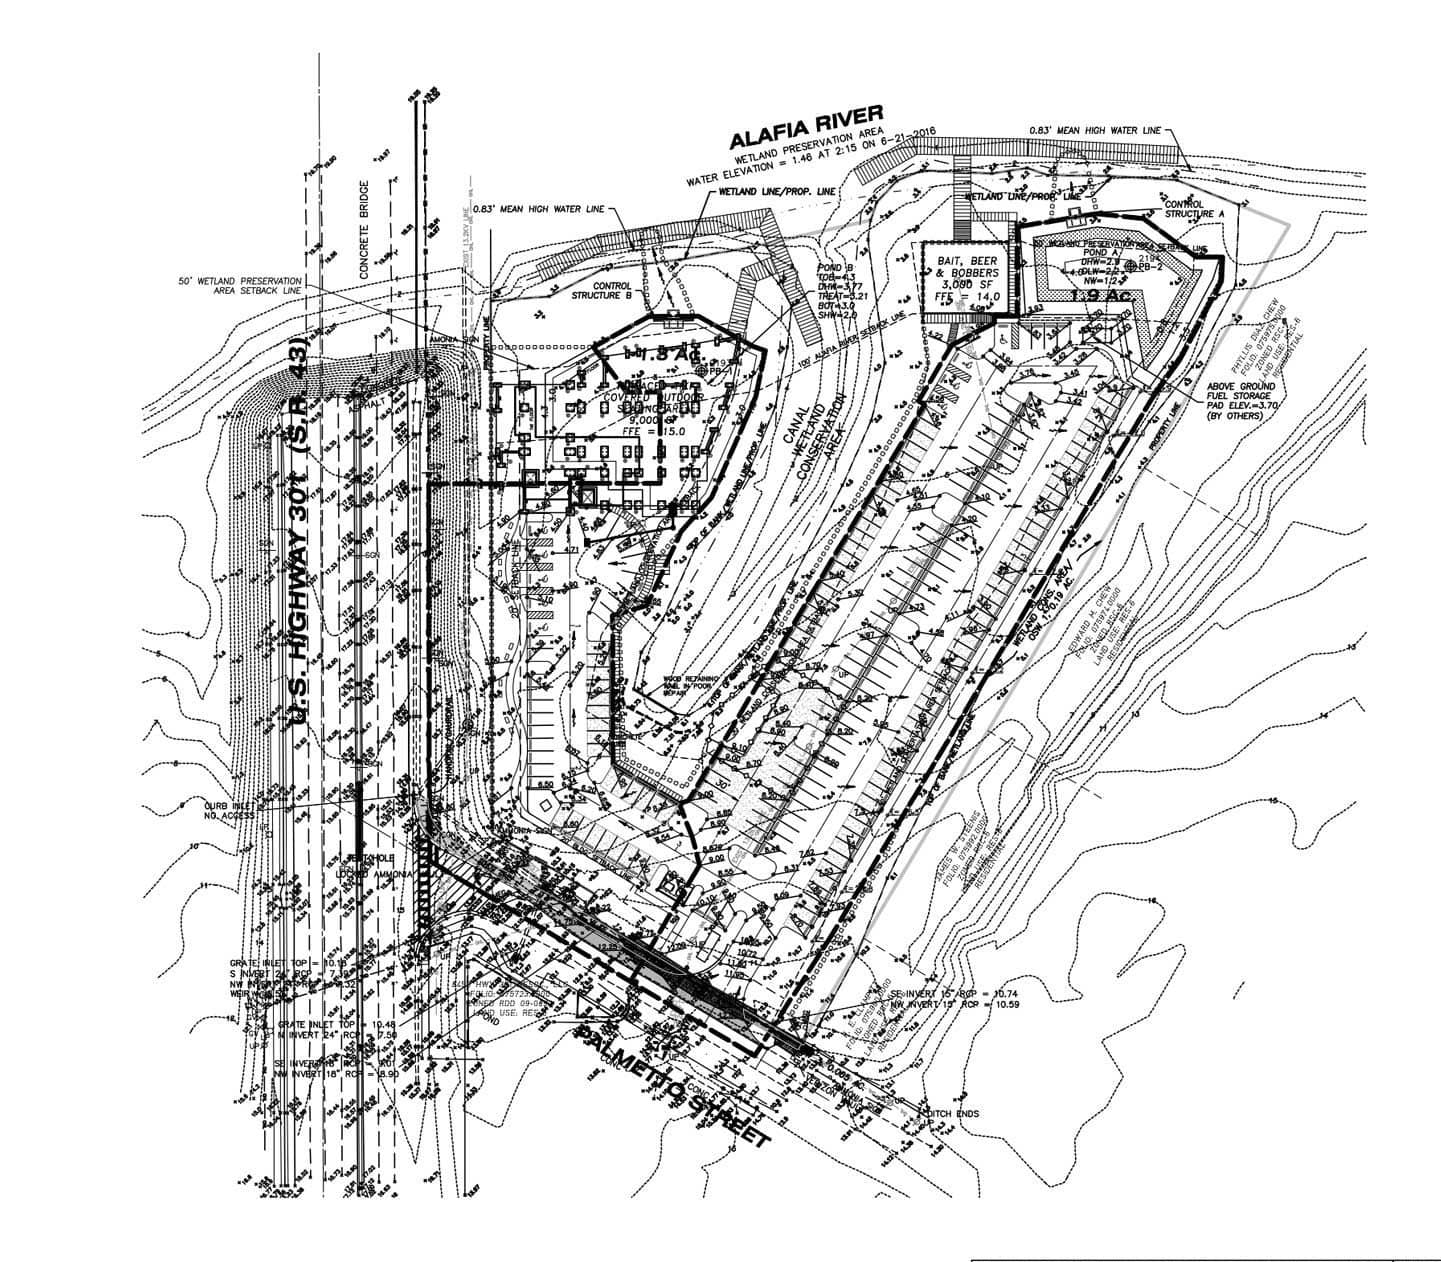 Tiki Docks detailed layout plan